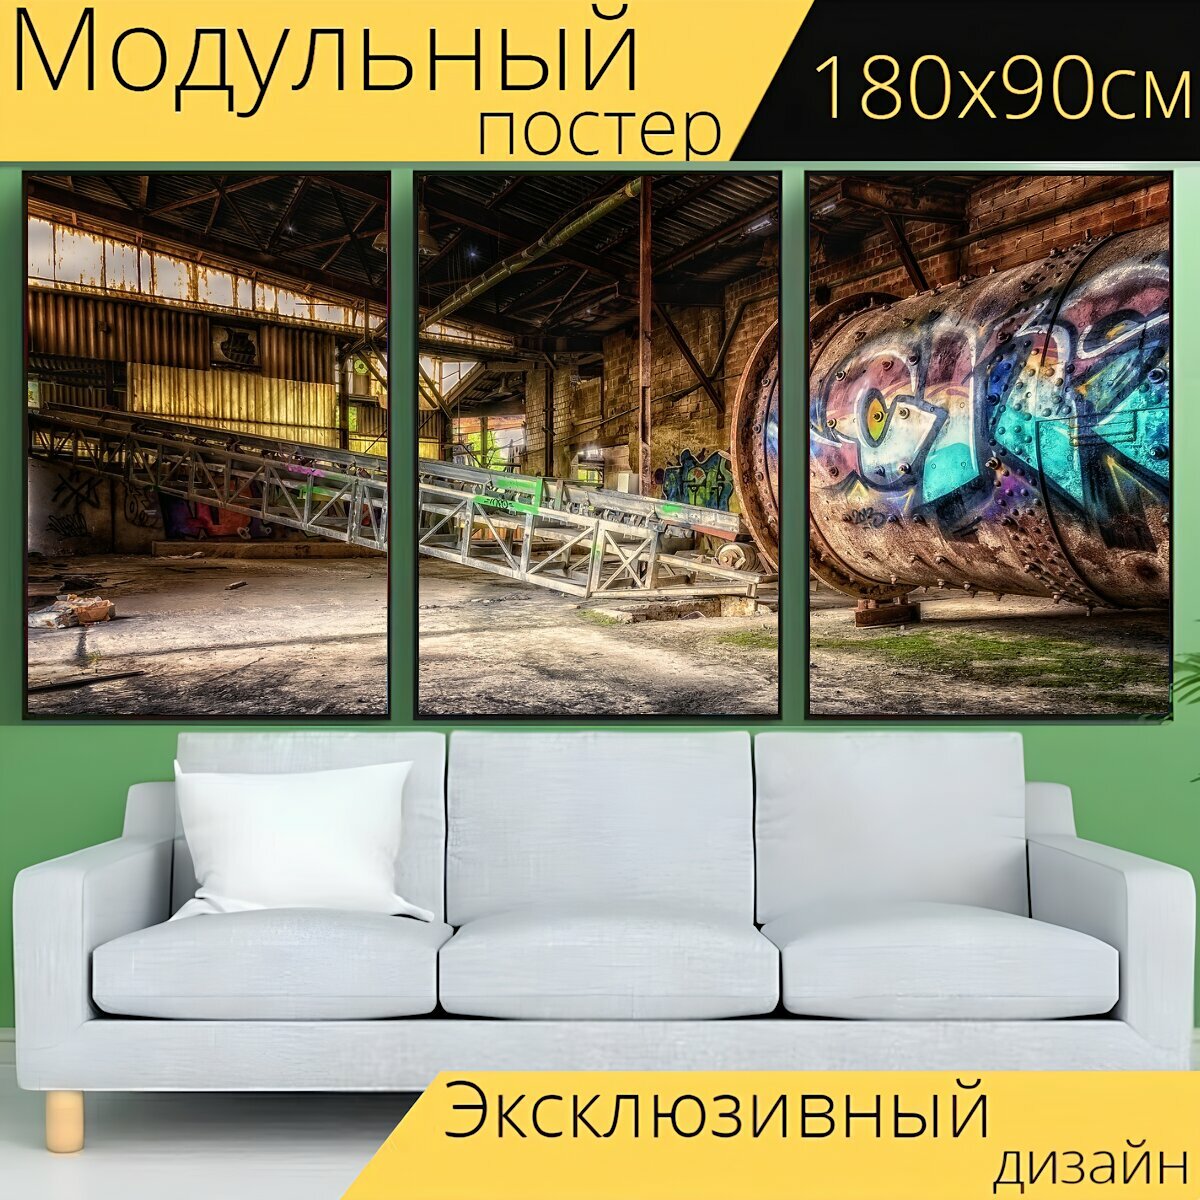 Модульный постер "Промышленность, фабрика, завод" 180 x 90 см. для интерьера